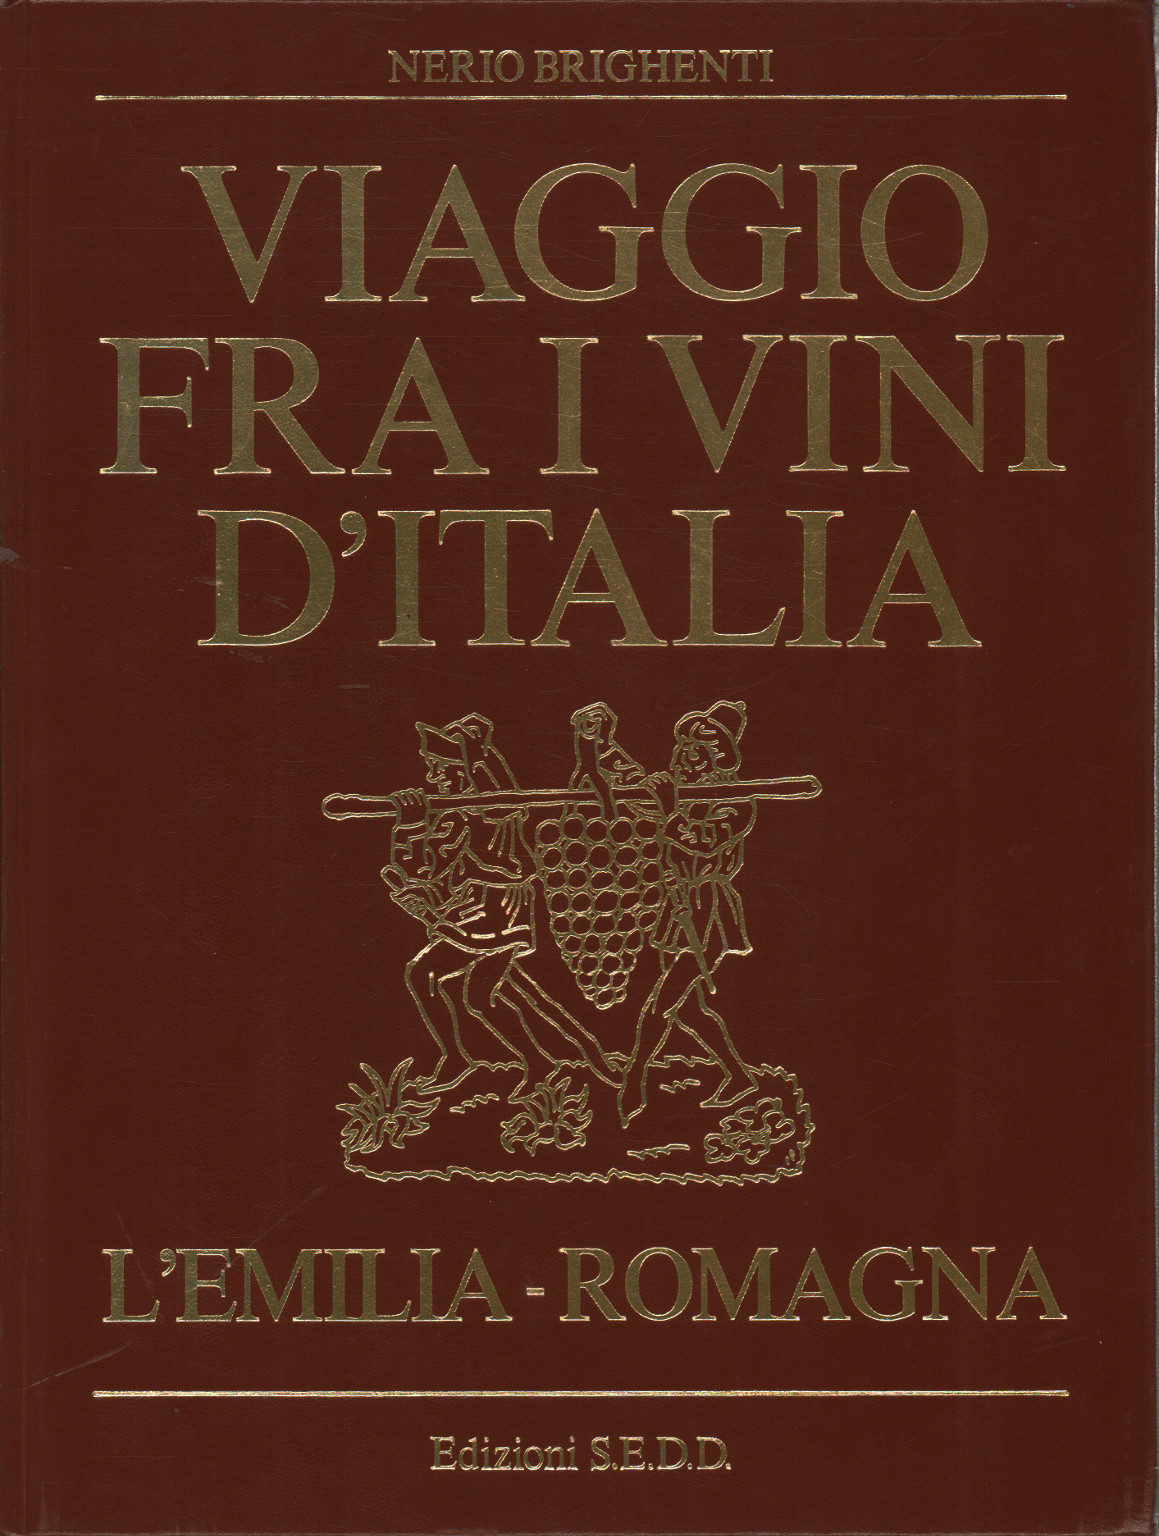 Viaggio fra i vini dell Emilia e Romagna, Nerio Brighenti